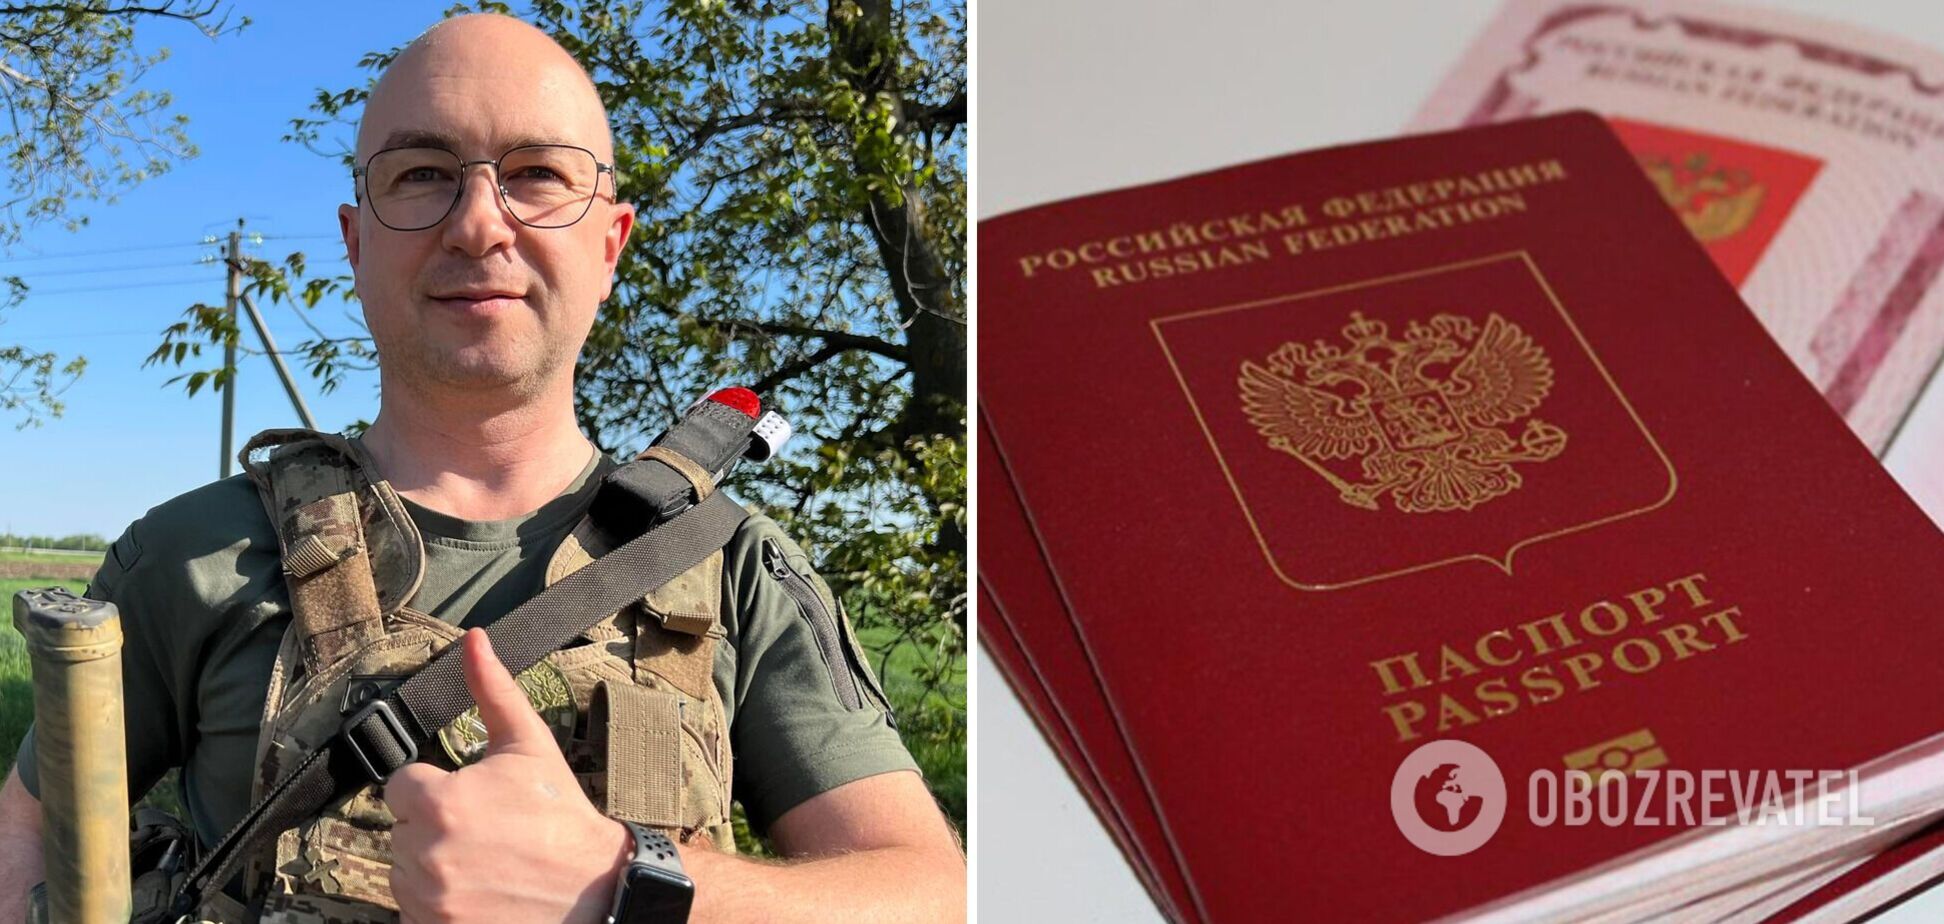 У топ-чиновника Минобороны обнаружили 'паспорт РФ': он уже назвал его фейковым и указал, в чем подделка. Фото и видео